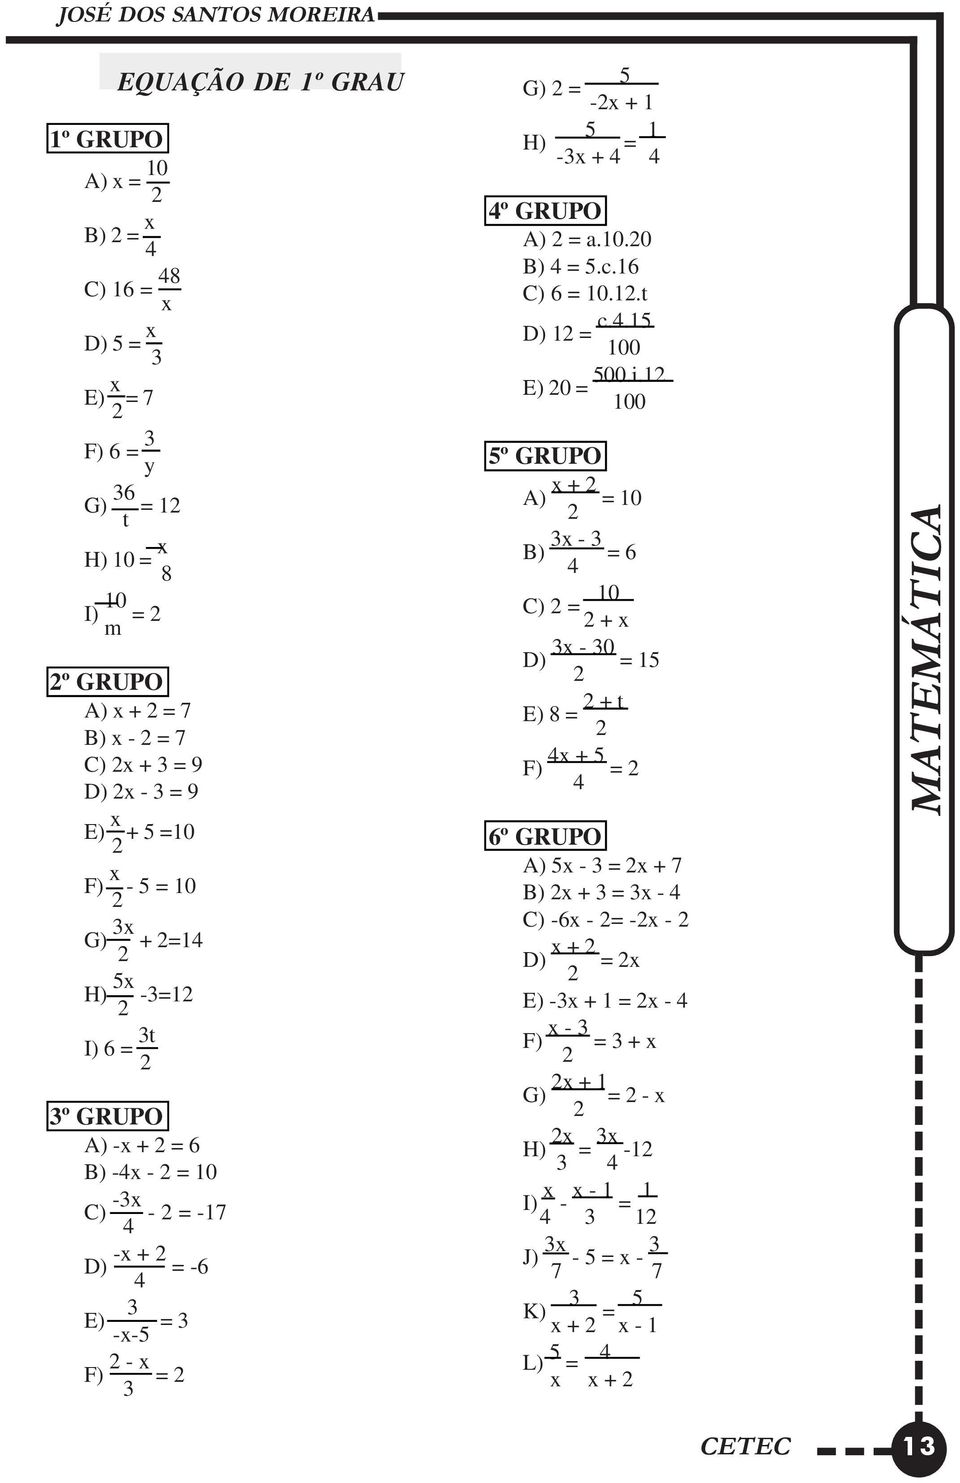 GRUPO A) -x + 2 = 6 B) -4x - 2 = 10 C) -3x - 2 = -17 4 D) -x + 2 = -6 4 3 E) = 3 -x-5 F) 2 - x = 2 3 5º GRUPO A) x + 2 = 10 2 B) 3x - 3 = 6 4 C) 2 = 10 2 + x D) 3x - 30 = 15 2 E) 8 = 2 + t 2 F) 4x +